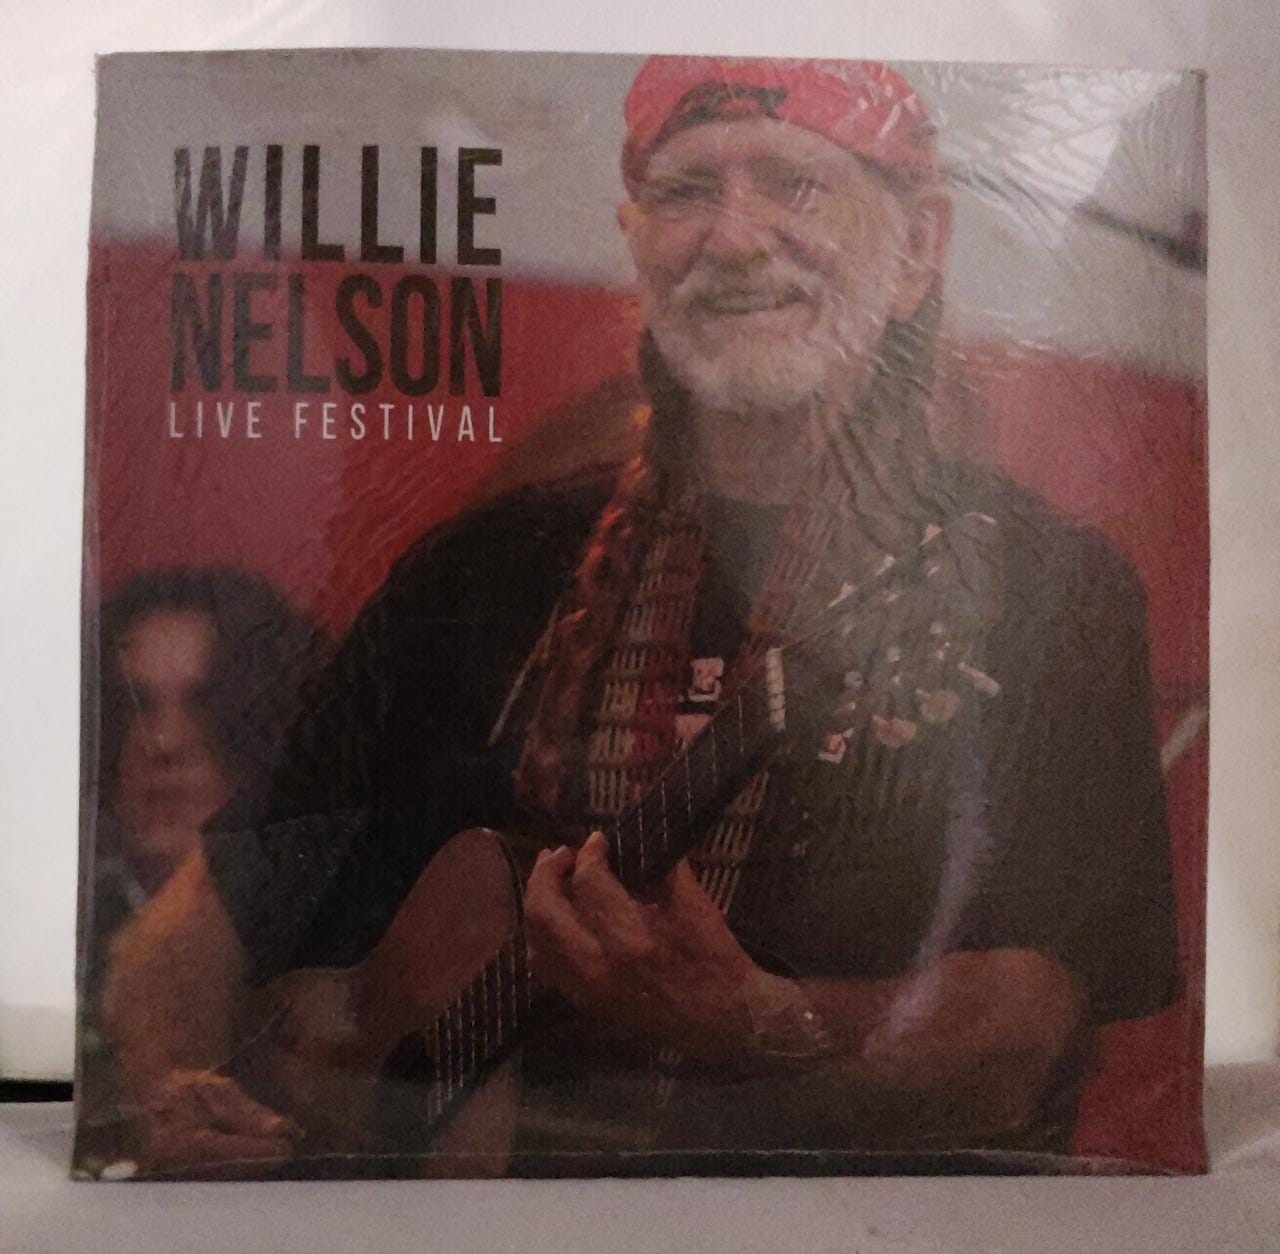 Vinilo Willie Nelson live festival [Openbox]